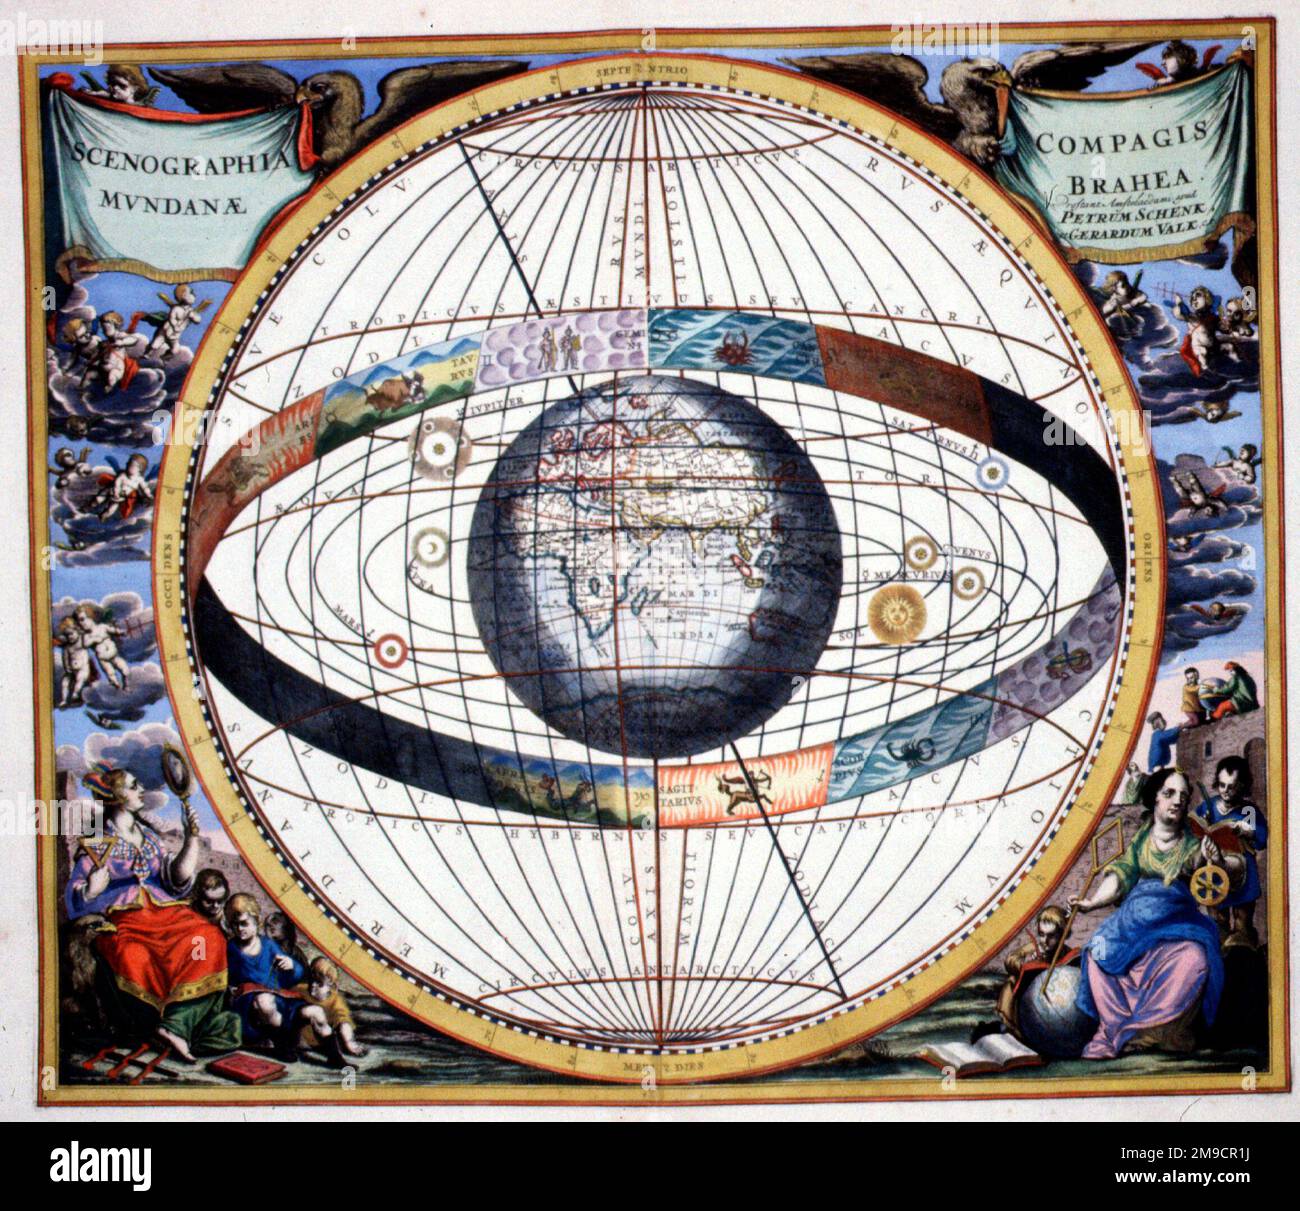 Scenographia Compagis Mundanae Brahea - Geo-heliozentrisches Modell des Universums von Tycho Brahe Stockfoto